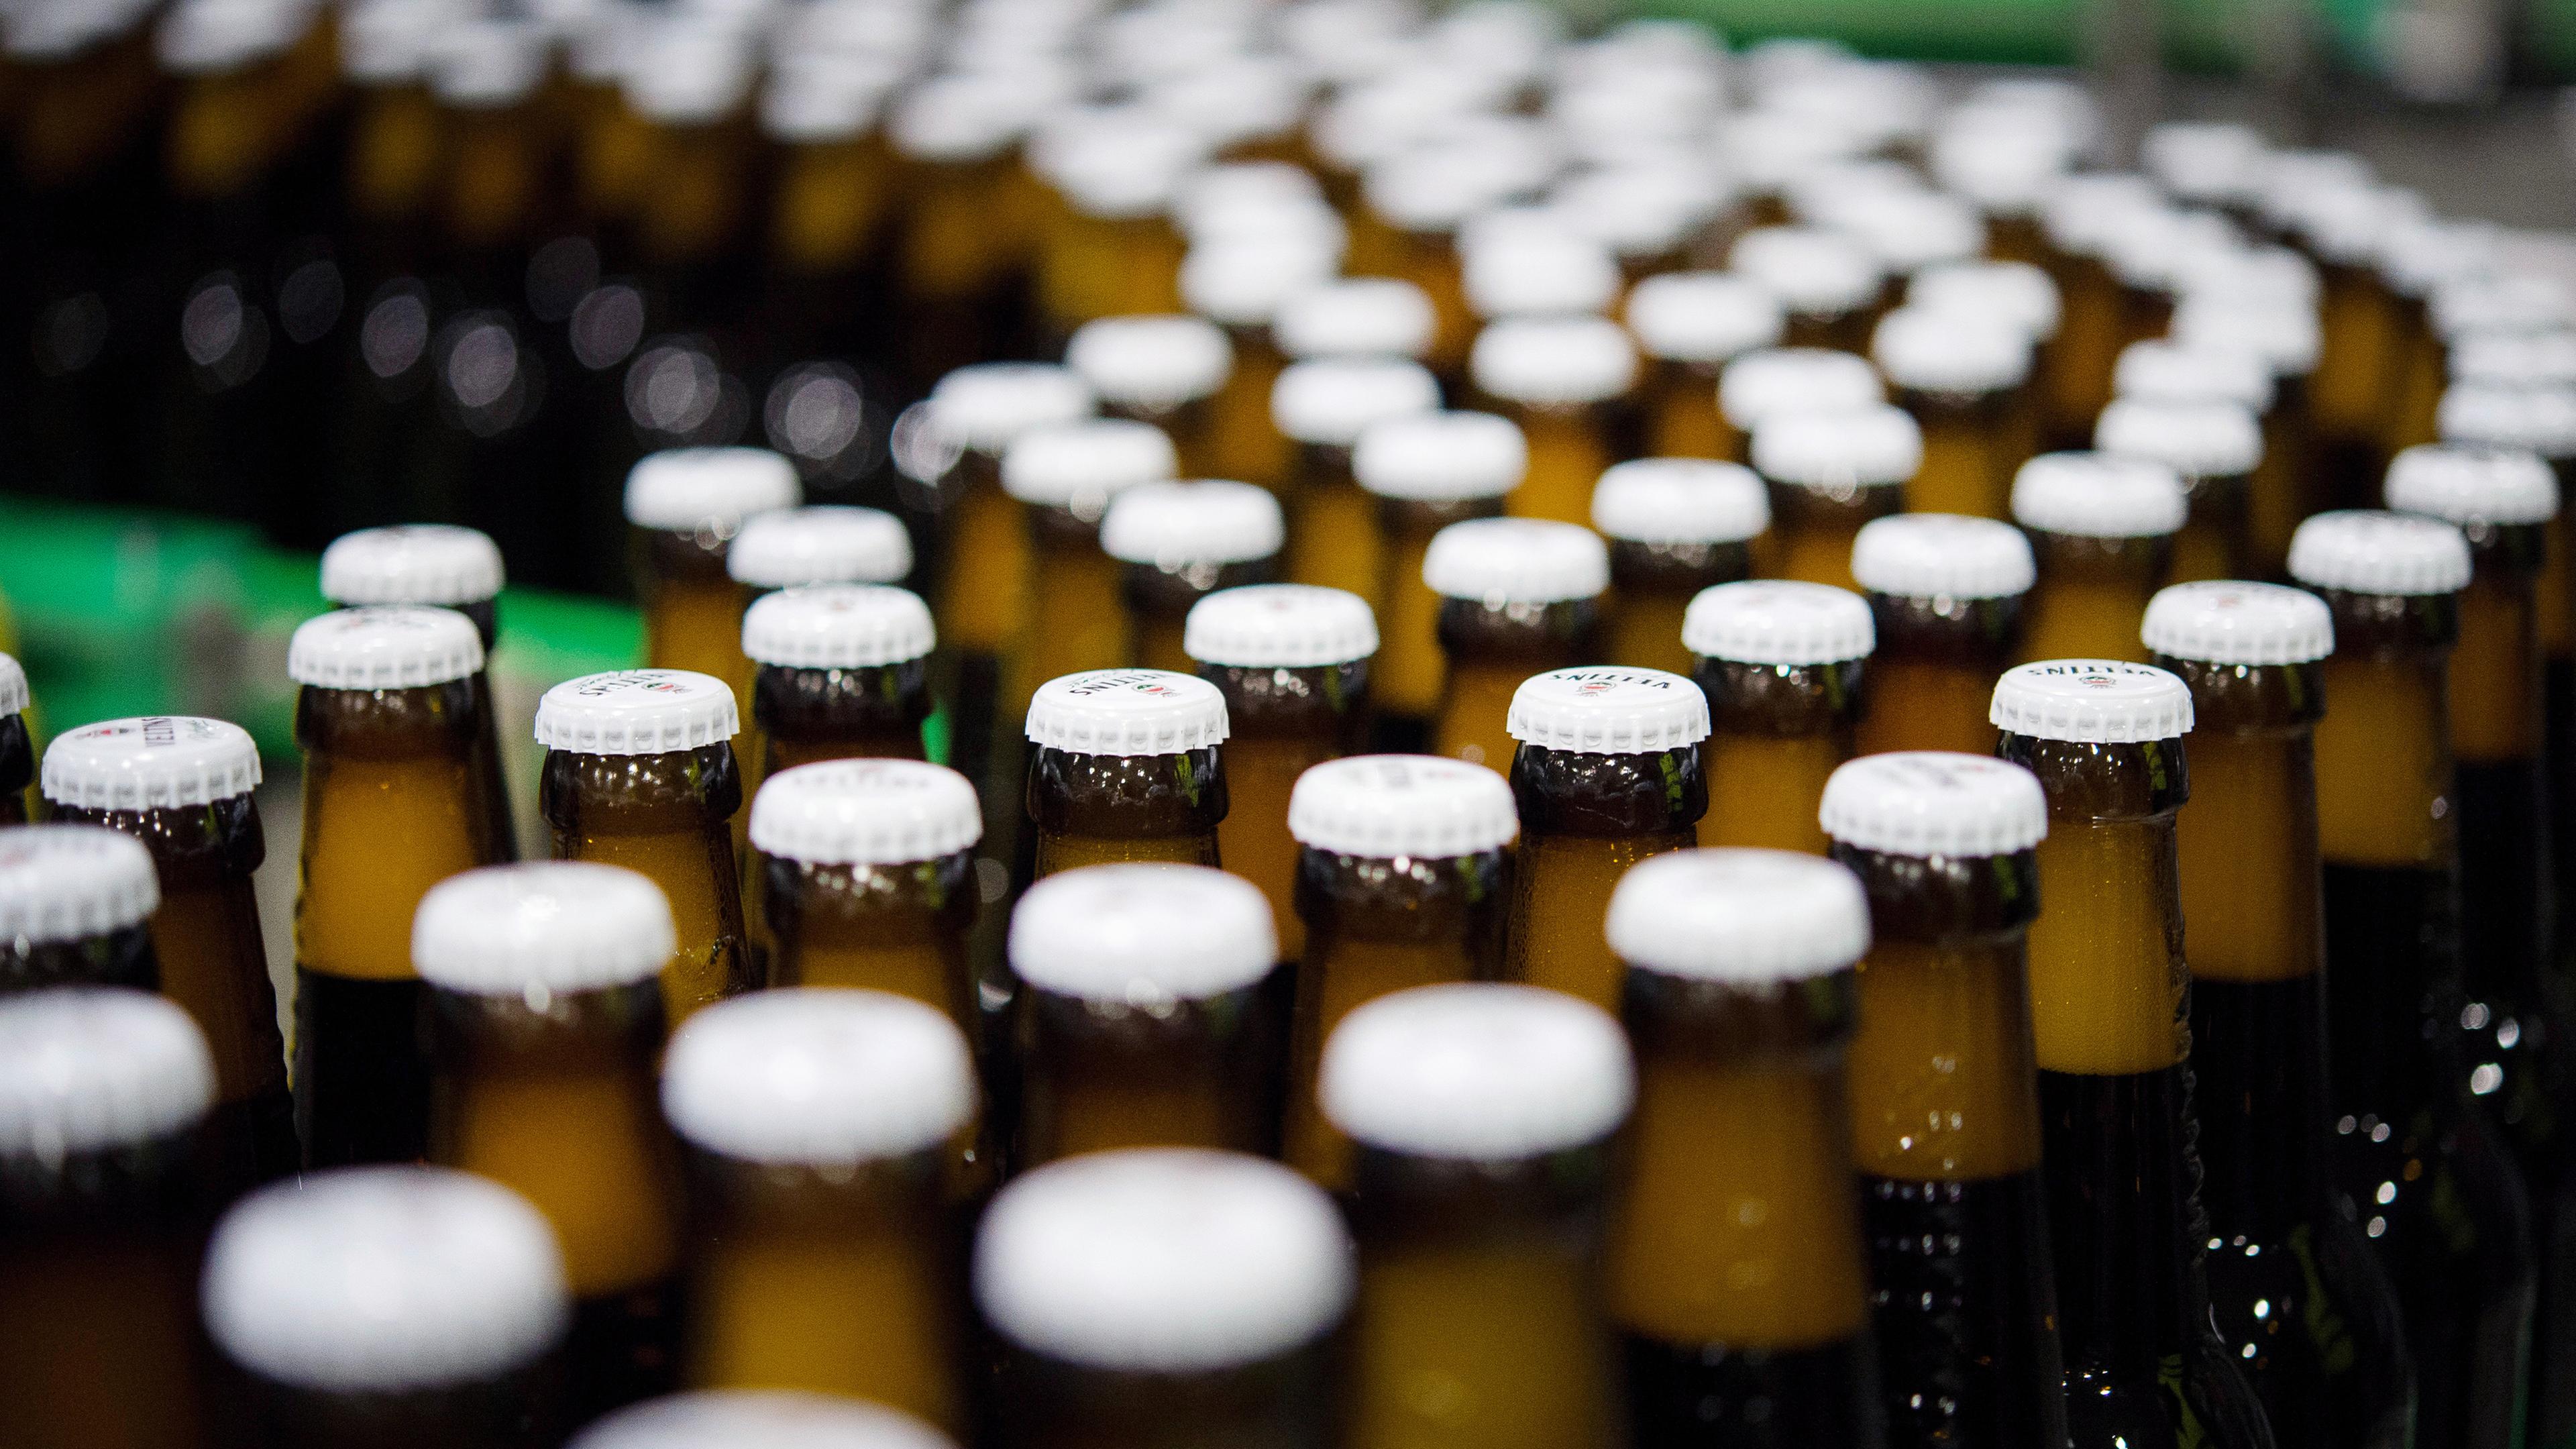 Archiv: Bierflaschen mit Kronkorken laufen durch die Produktion einer Brauerei